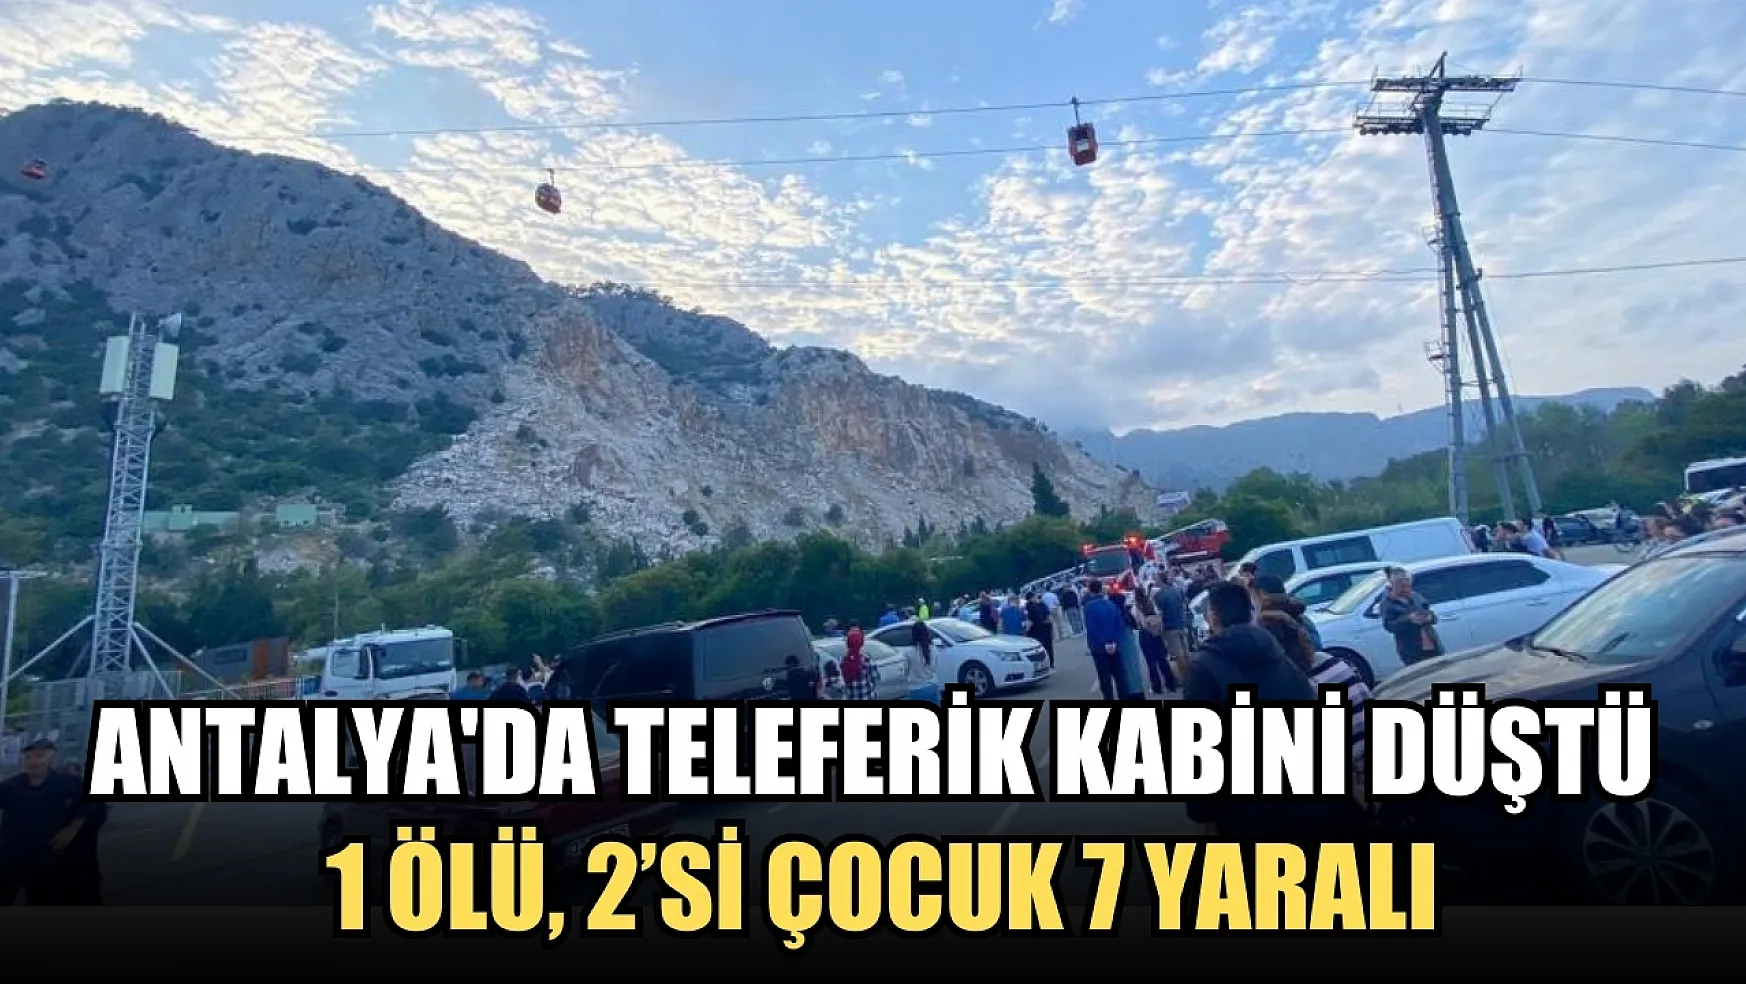 Antalya'da teleferik kabini düştü: 1 ölü, 2'si çocuk 7 yaralı